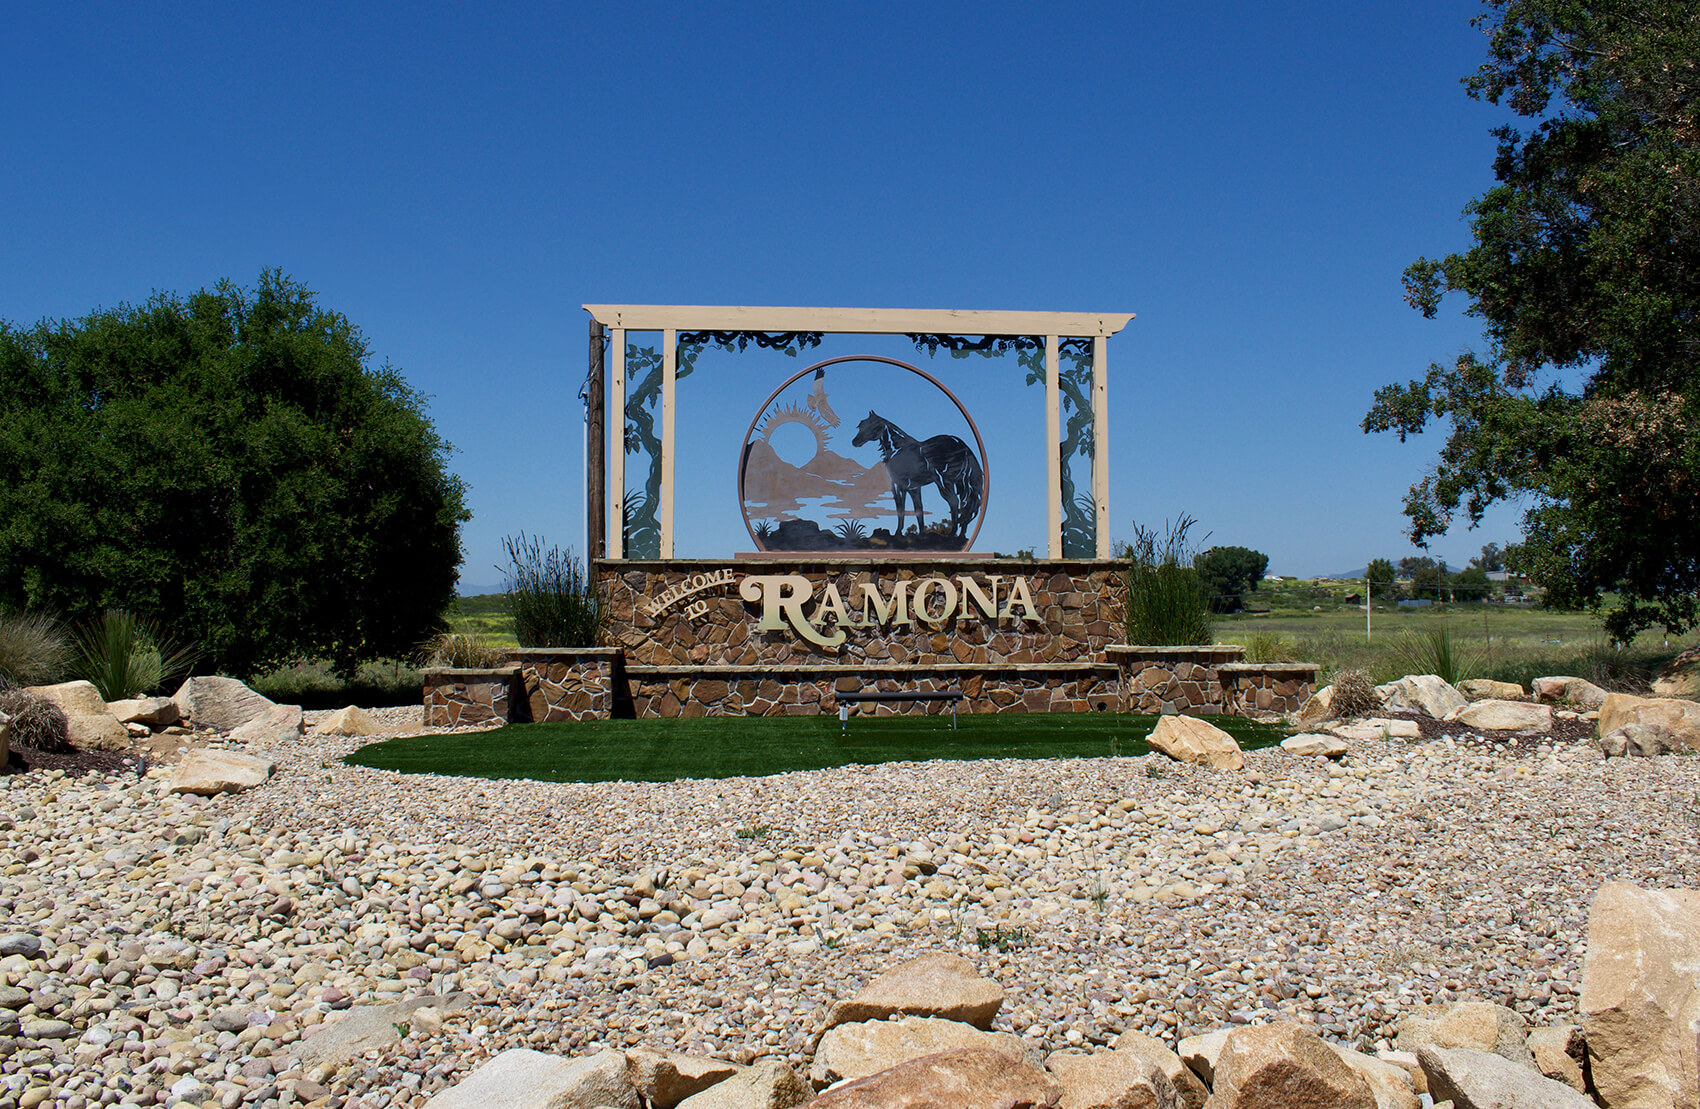 Ramona, California